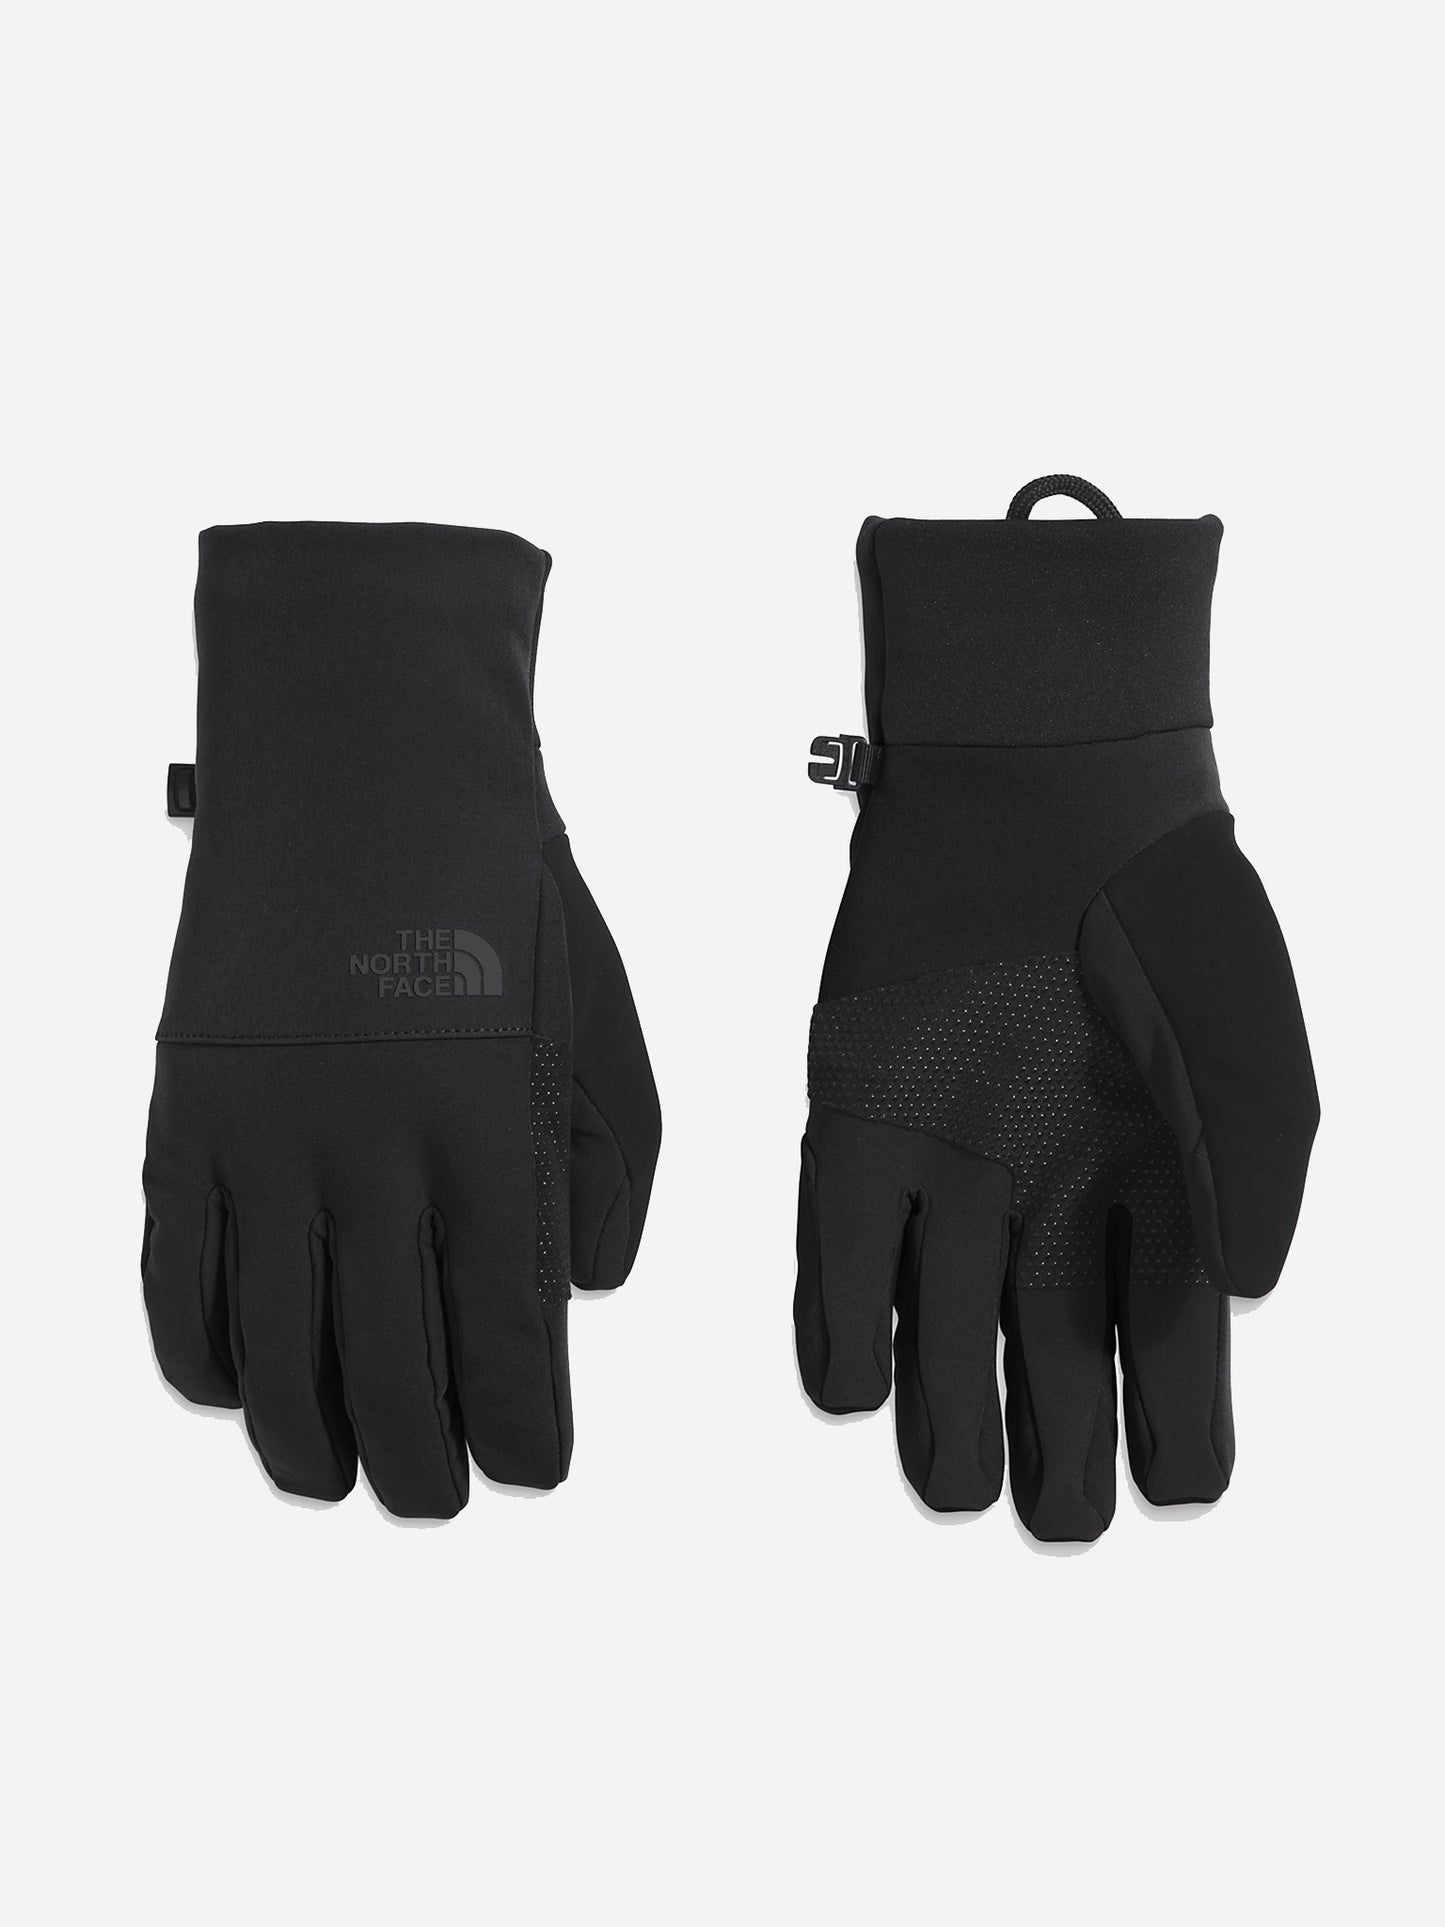 The North Face Men's Apex Etip™ Glove